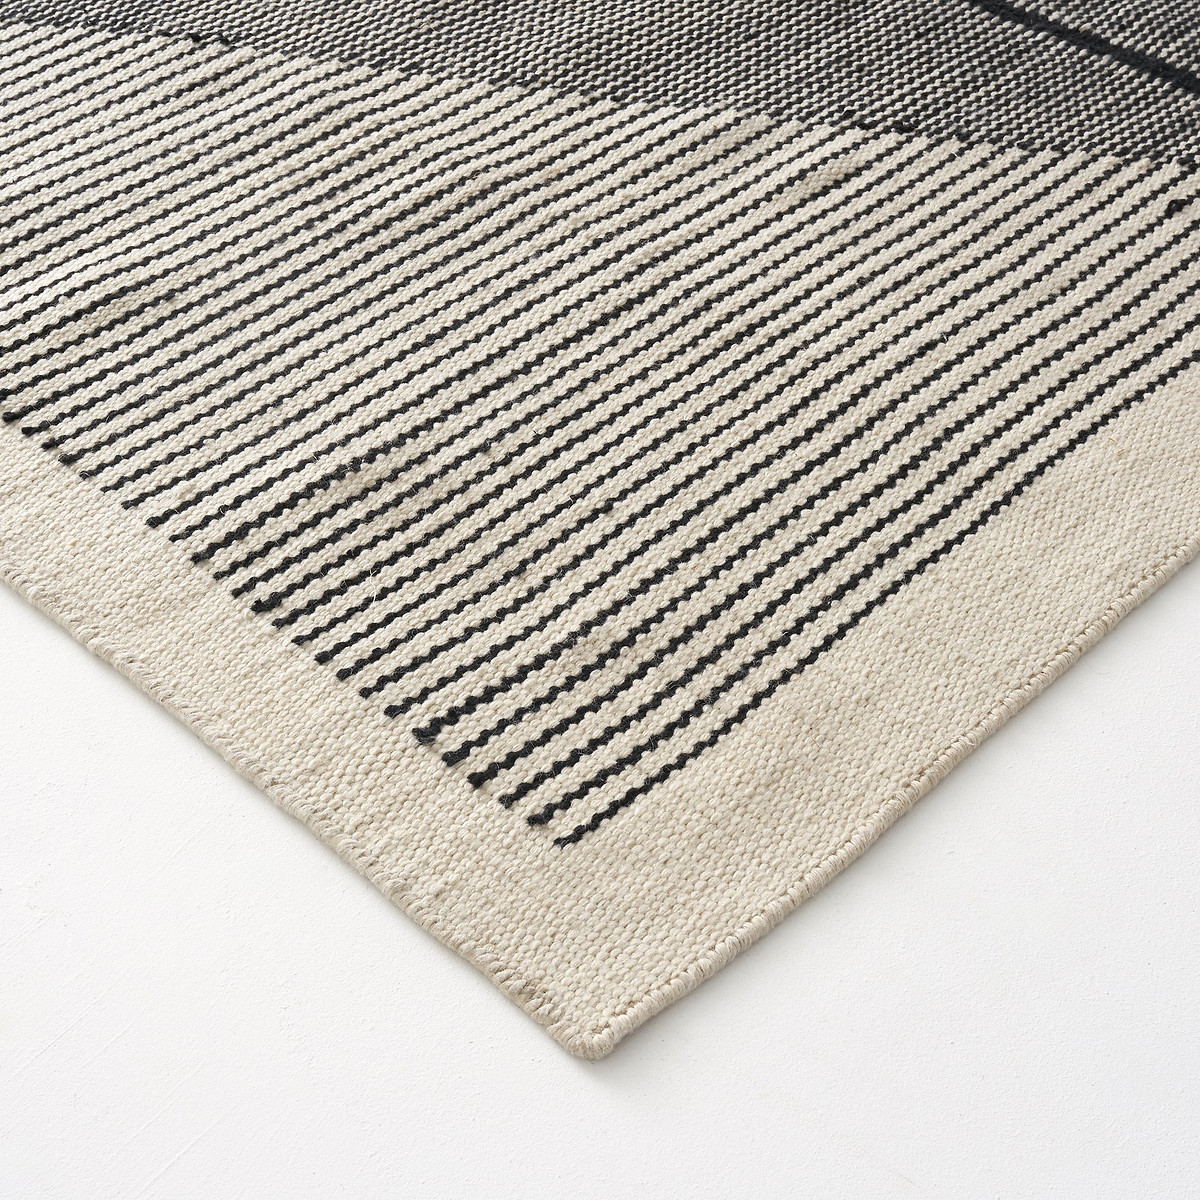 Ковер La Redoute Килим с горизонтальным плетением Loscan 200 x 290 см черный, размер 200 x 290 см - фото 2